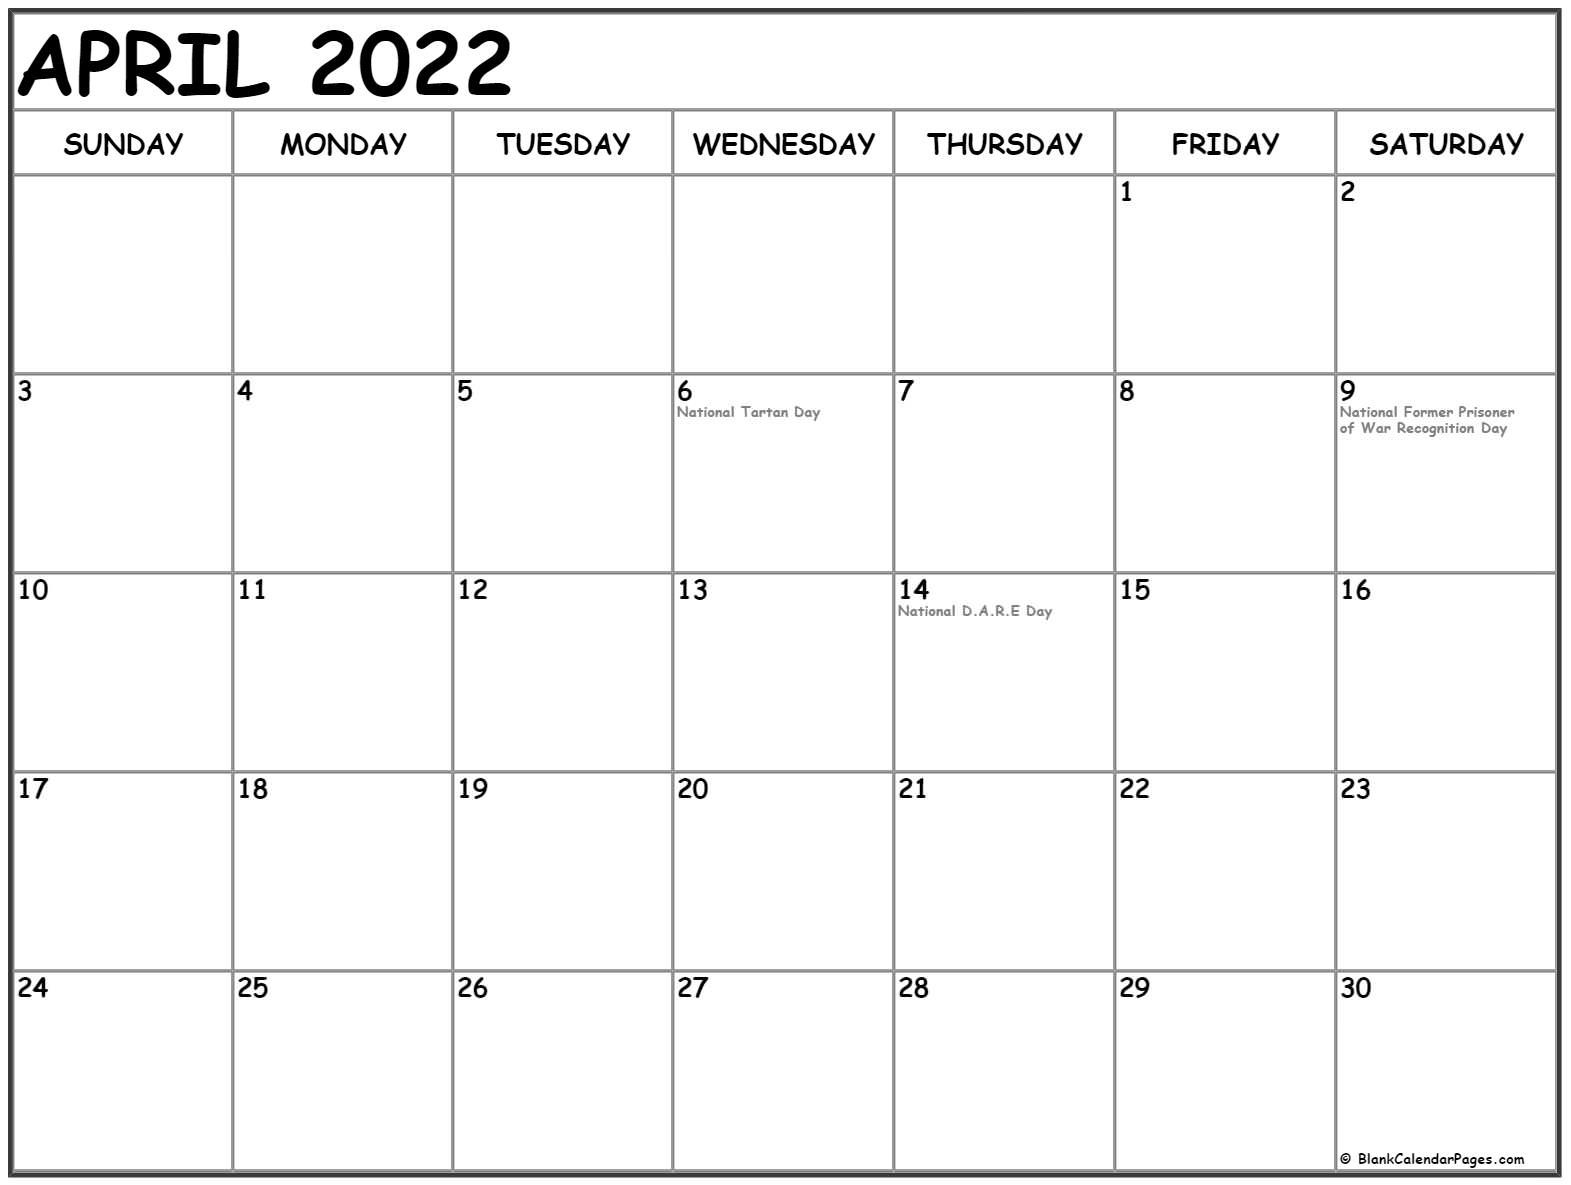 April 2022 Calendar With Holidays